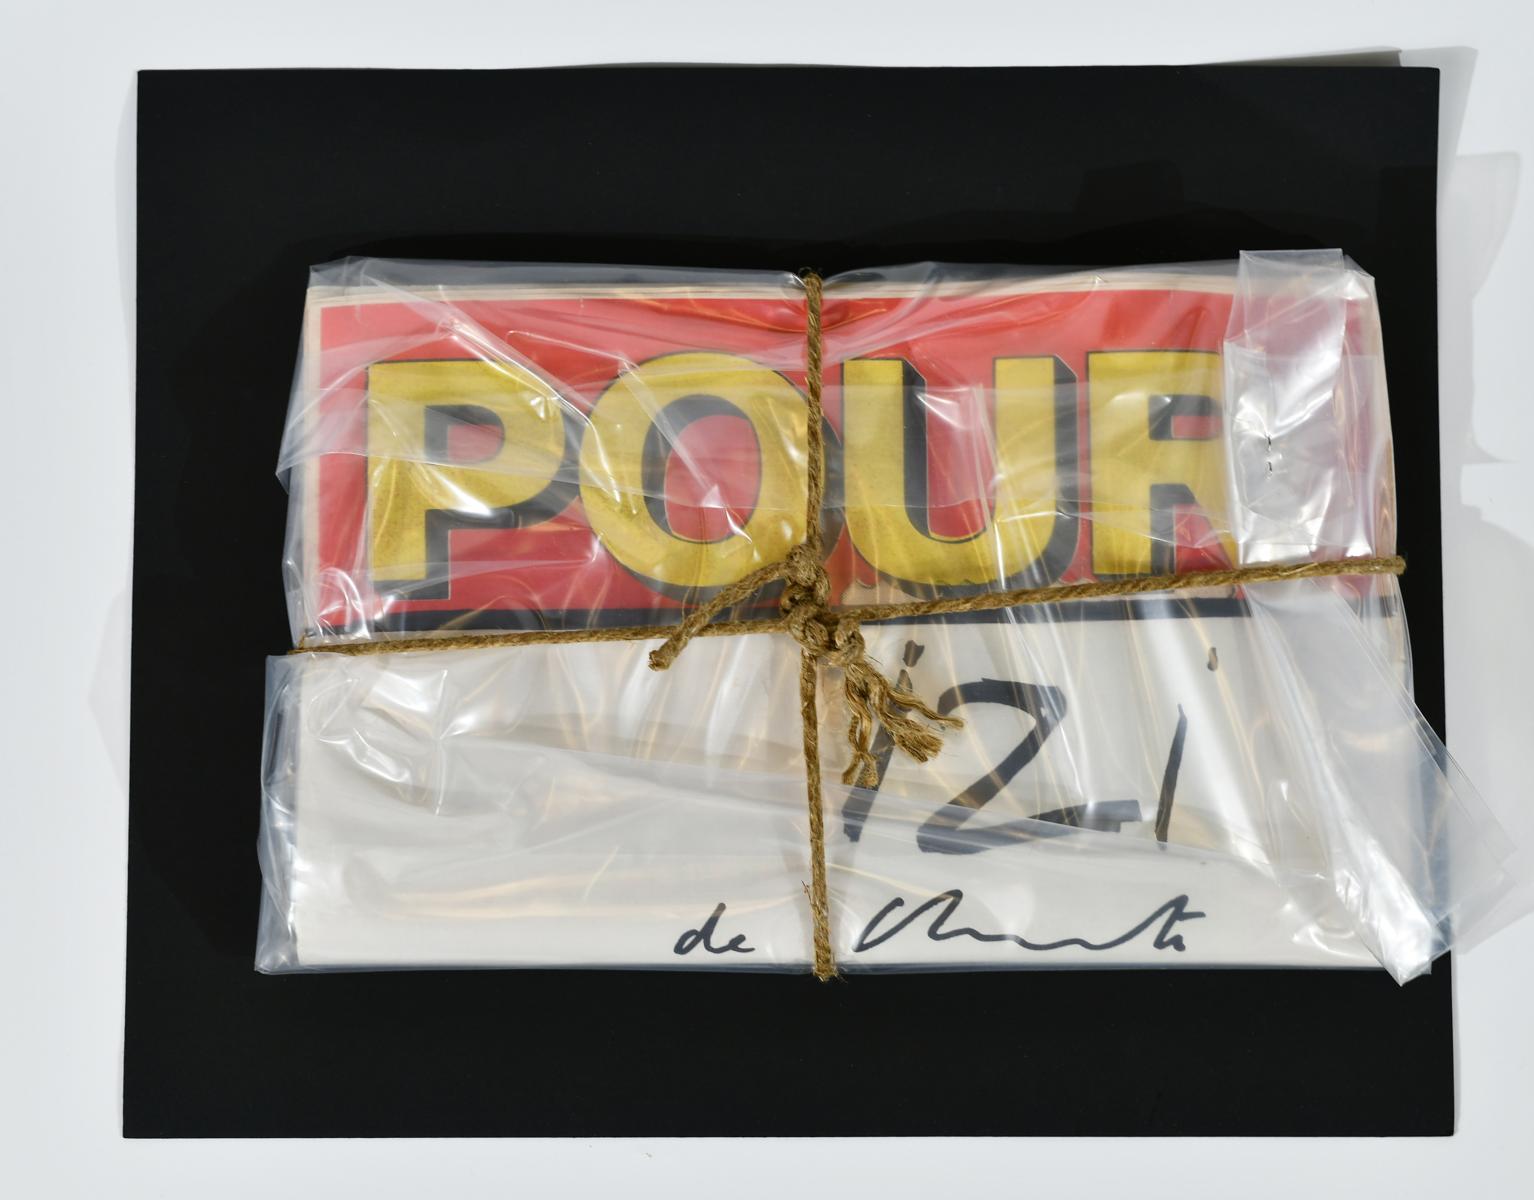 Christo Christo Javatscheff - Pour Journal Wrapped, 63493-15, Van Ham Kunstauktionen